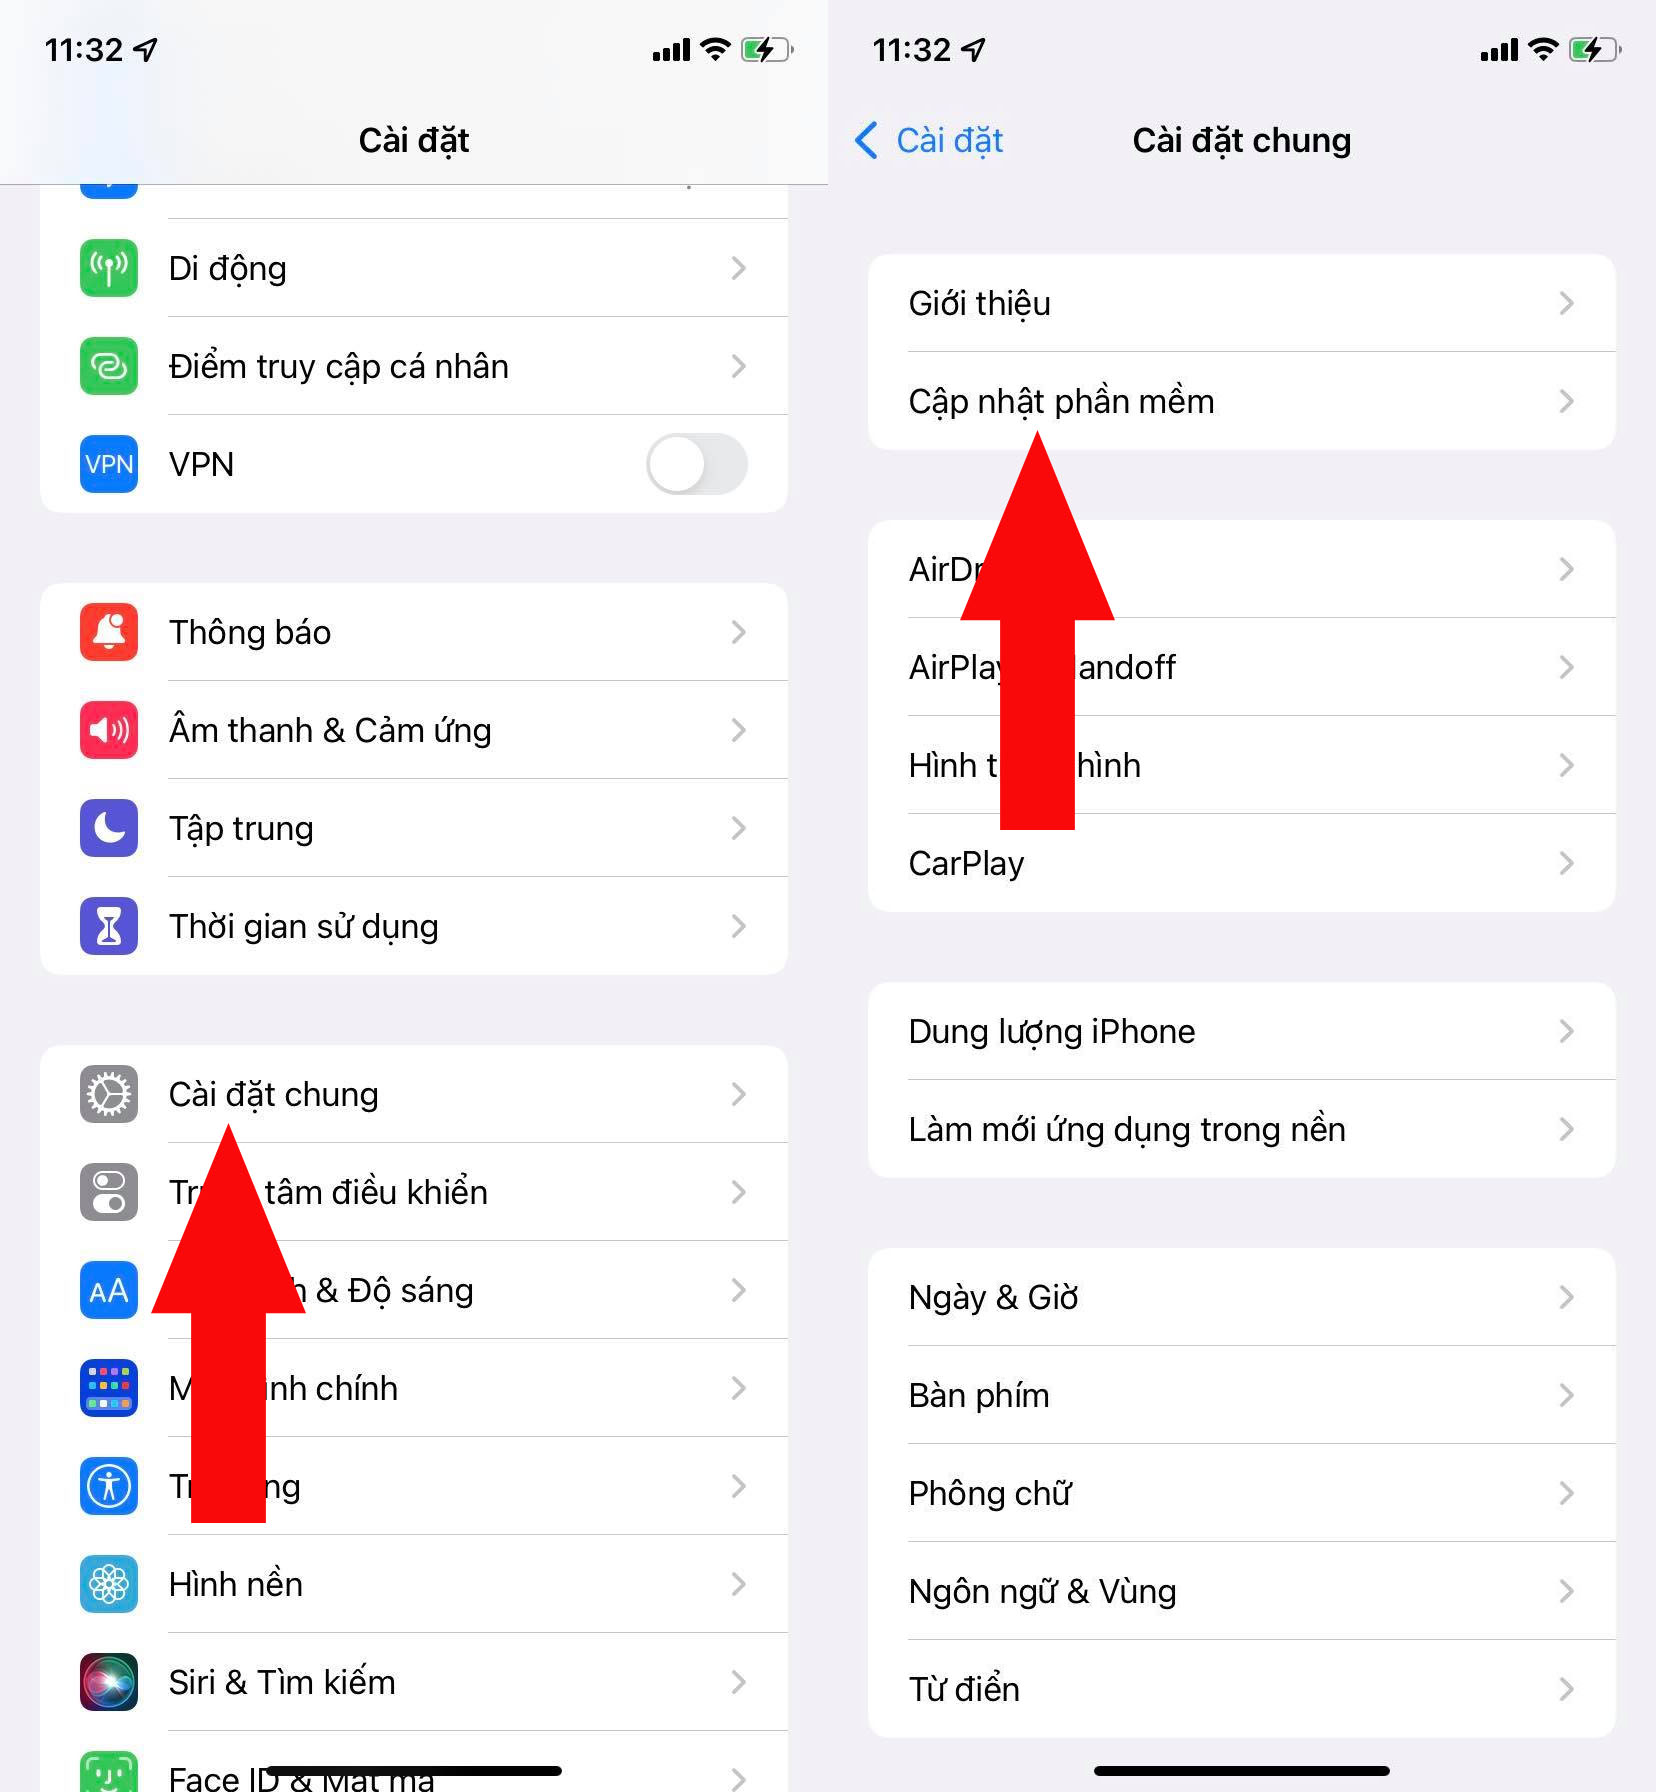 Chi tiết và mời tải về bản cập nhật iOS 11.3 Beta 3 với nhiều cập nhật nhỏ  | Hệ thống sửa chữa điện thoại - Điện Thoại Vui